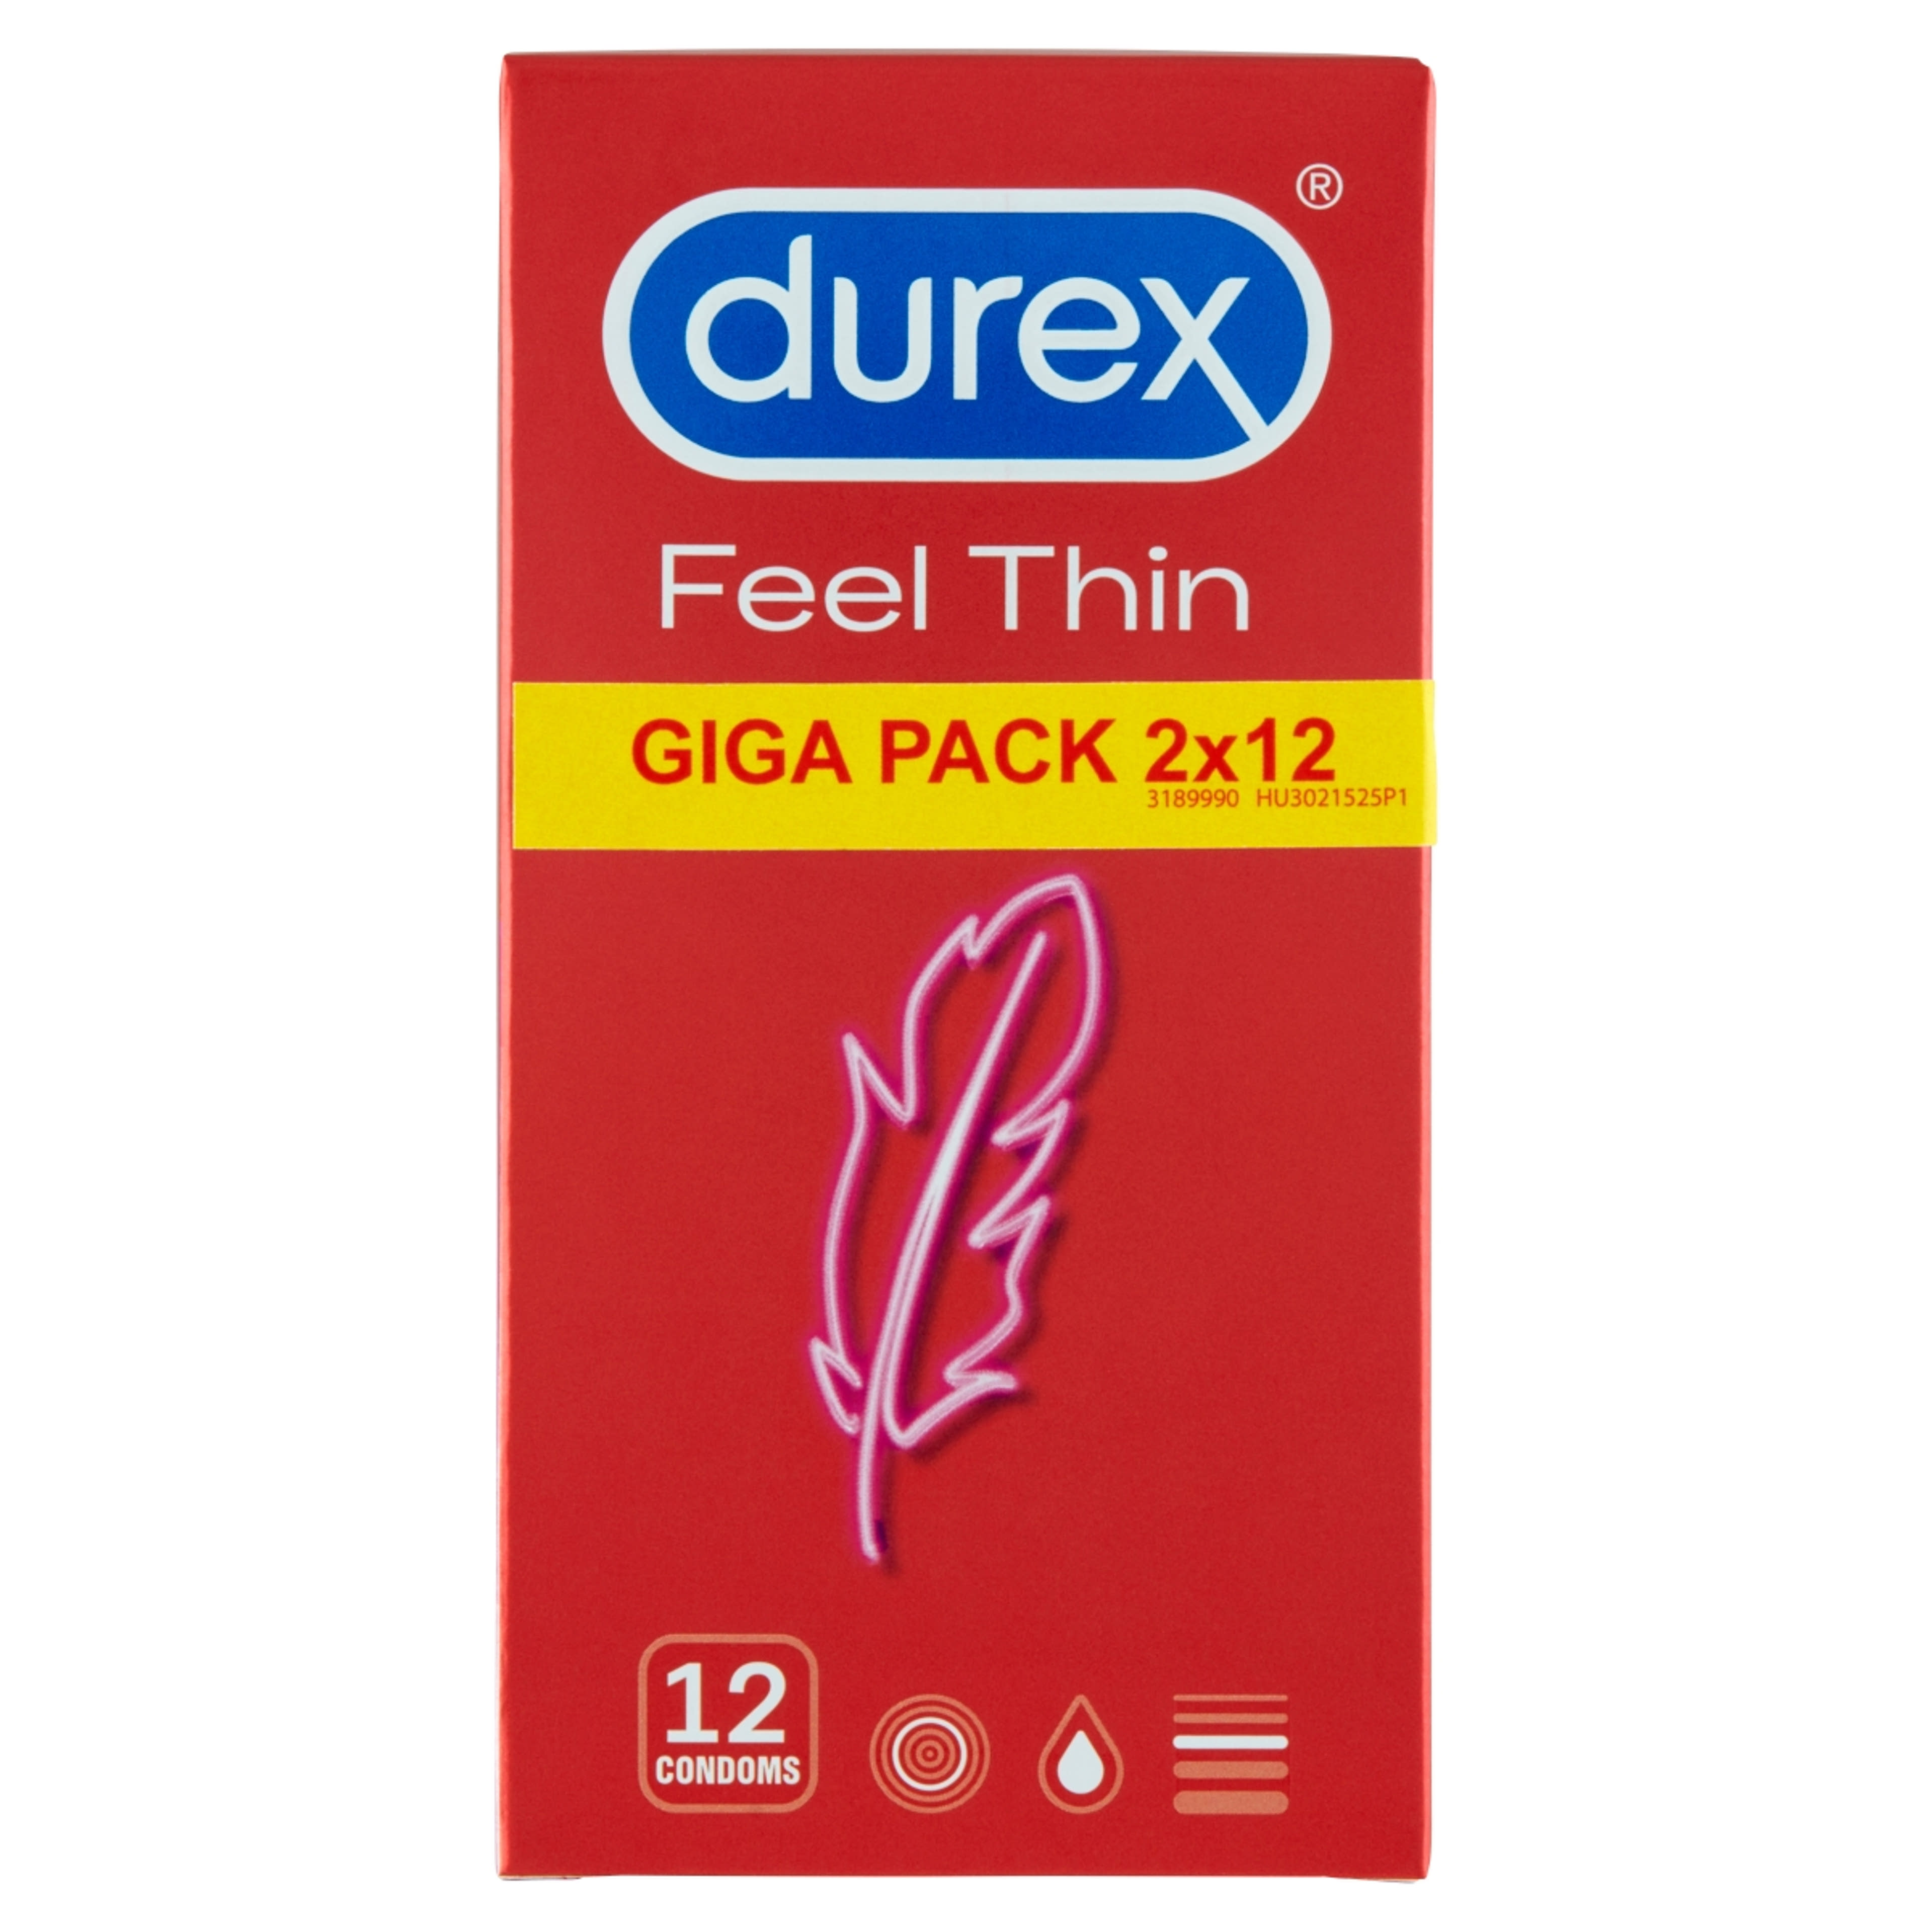 Durex óvszer feel thin (2x12) - 1 db